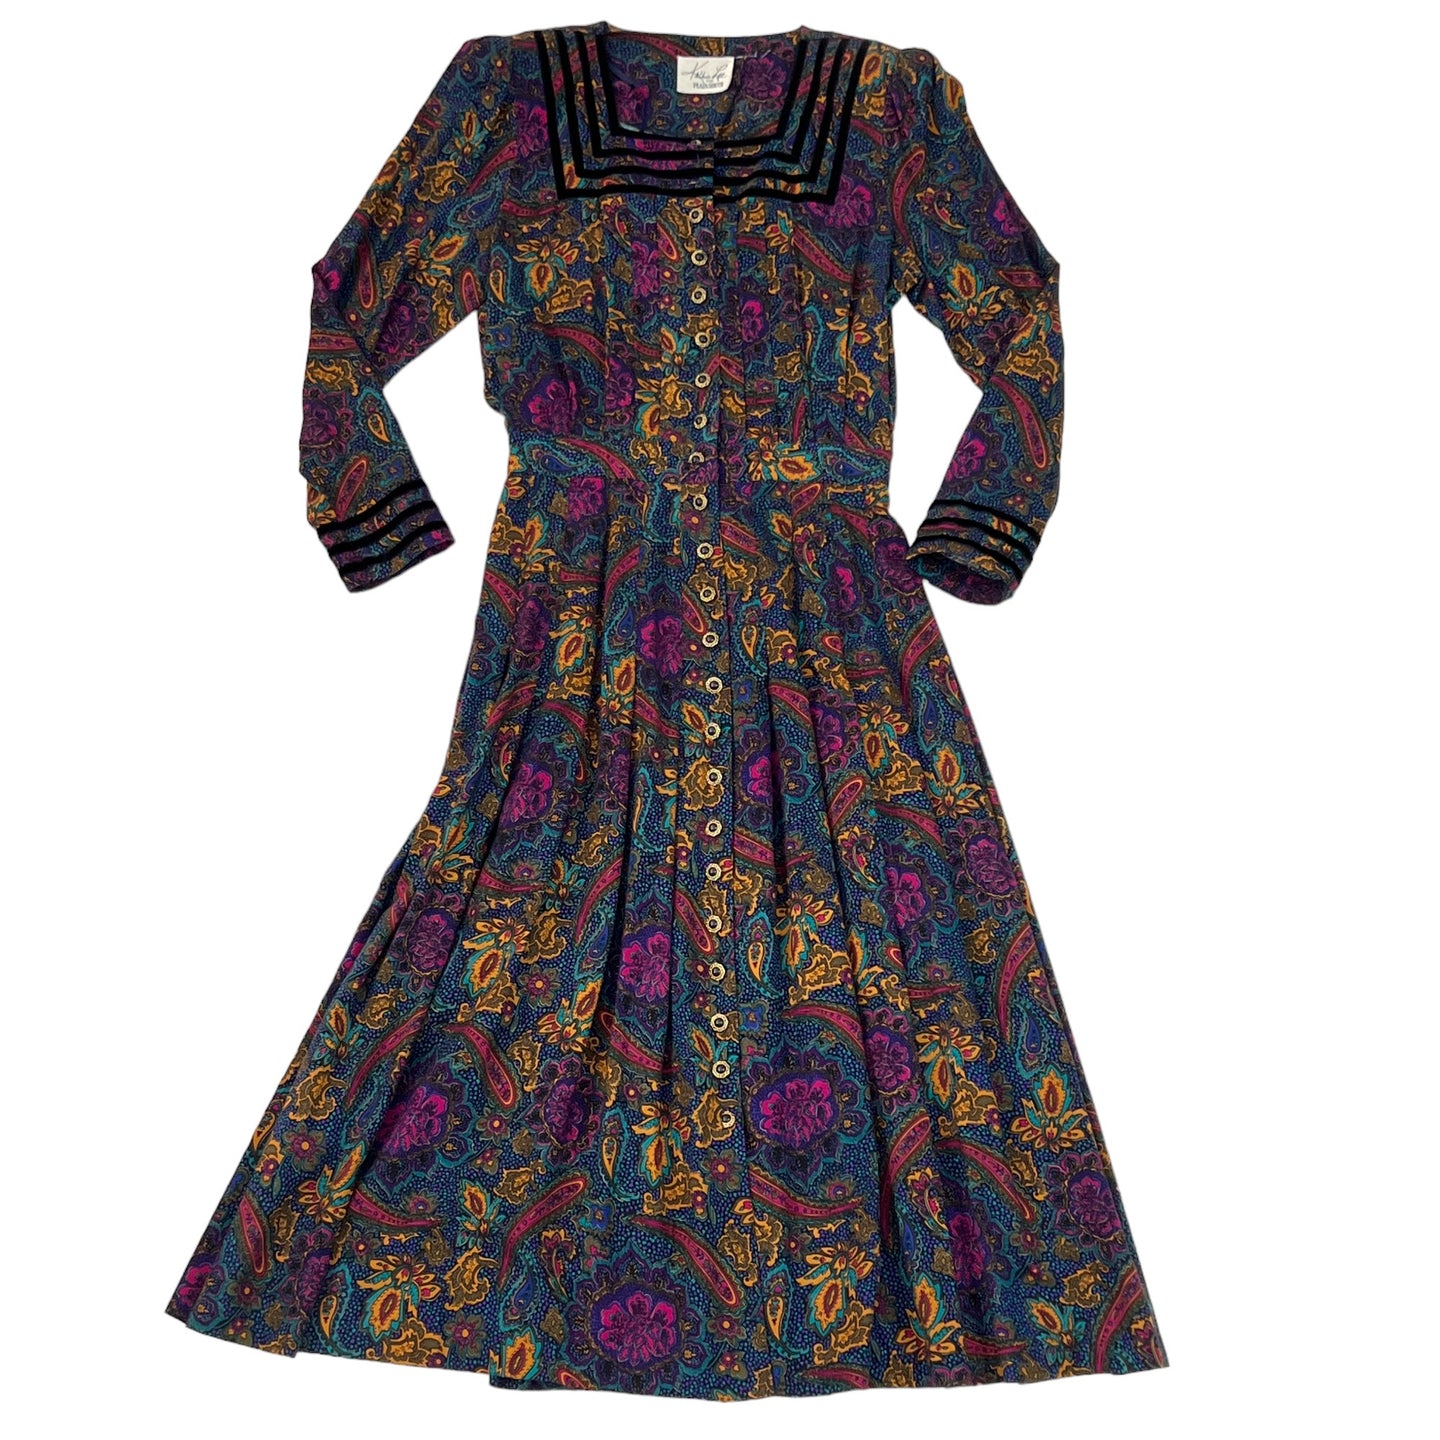 Vintage Paisley Floral Prairie Cottage Core Maxi Dress Size Medium/Large